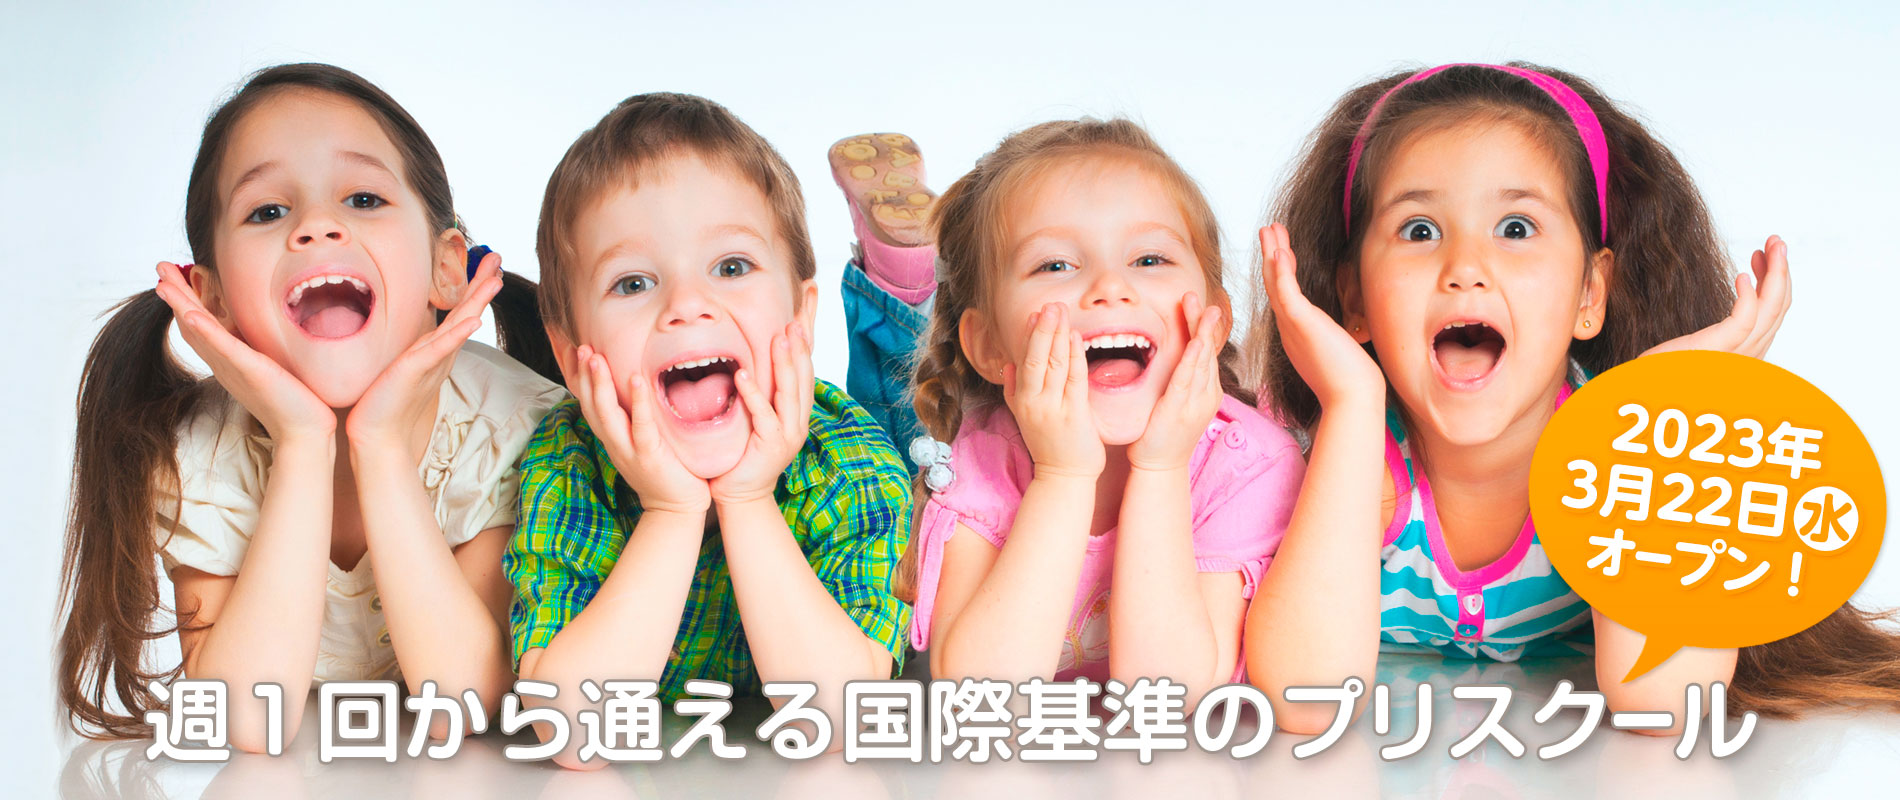 ファーストラーニング浜松、2023年3月22日オープン！はじめての習い事に最適なインターナショナルな子供英会話教室です。